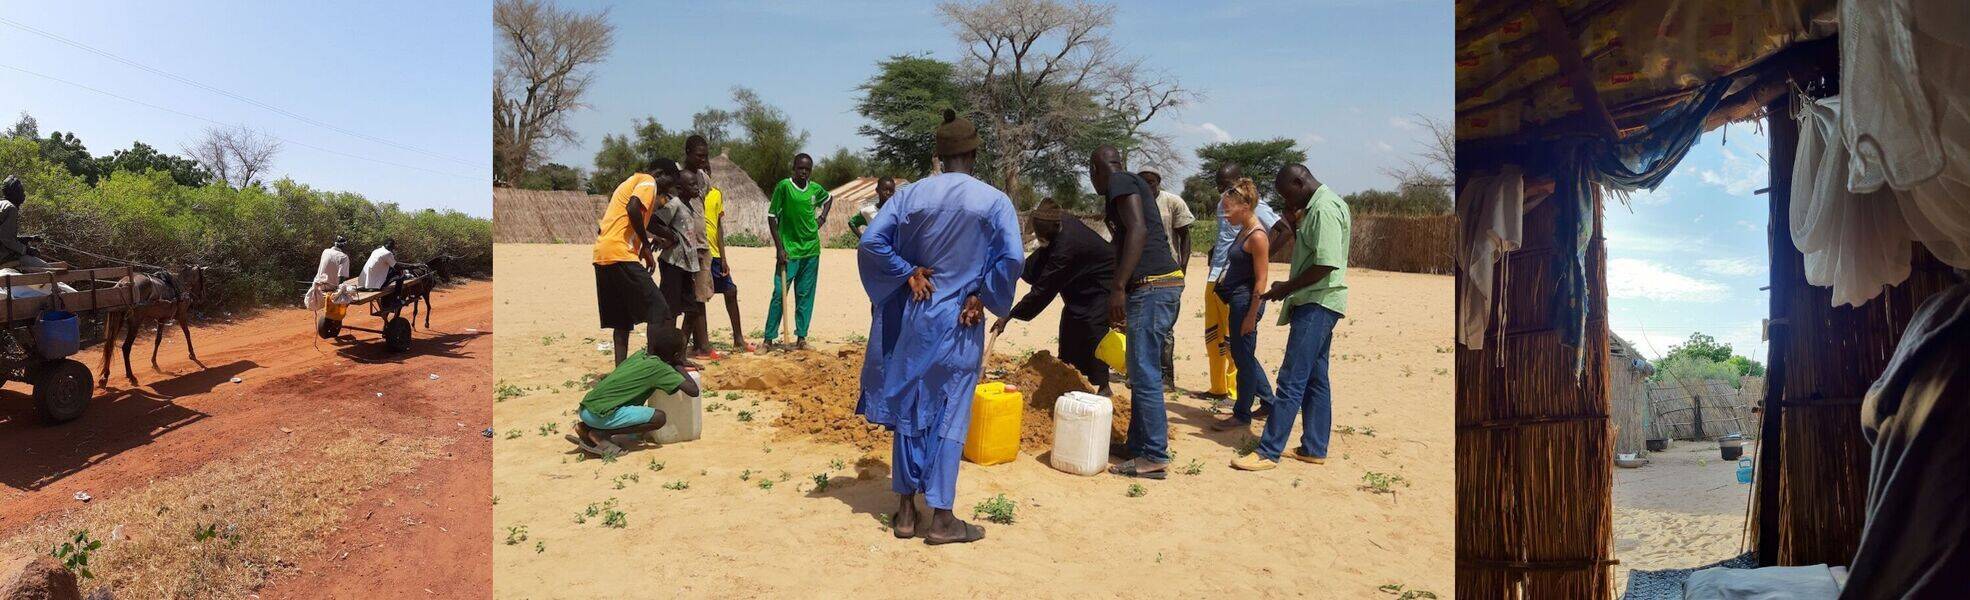 Volunteer work in ecological house building in Senegal